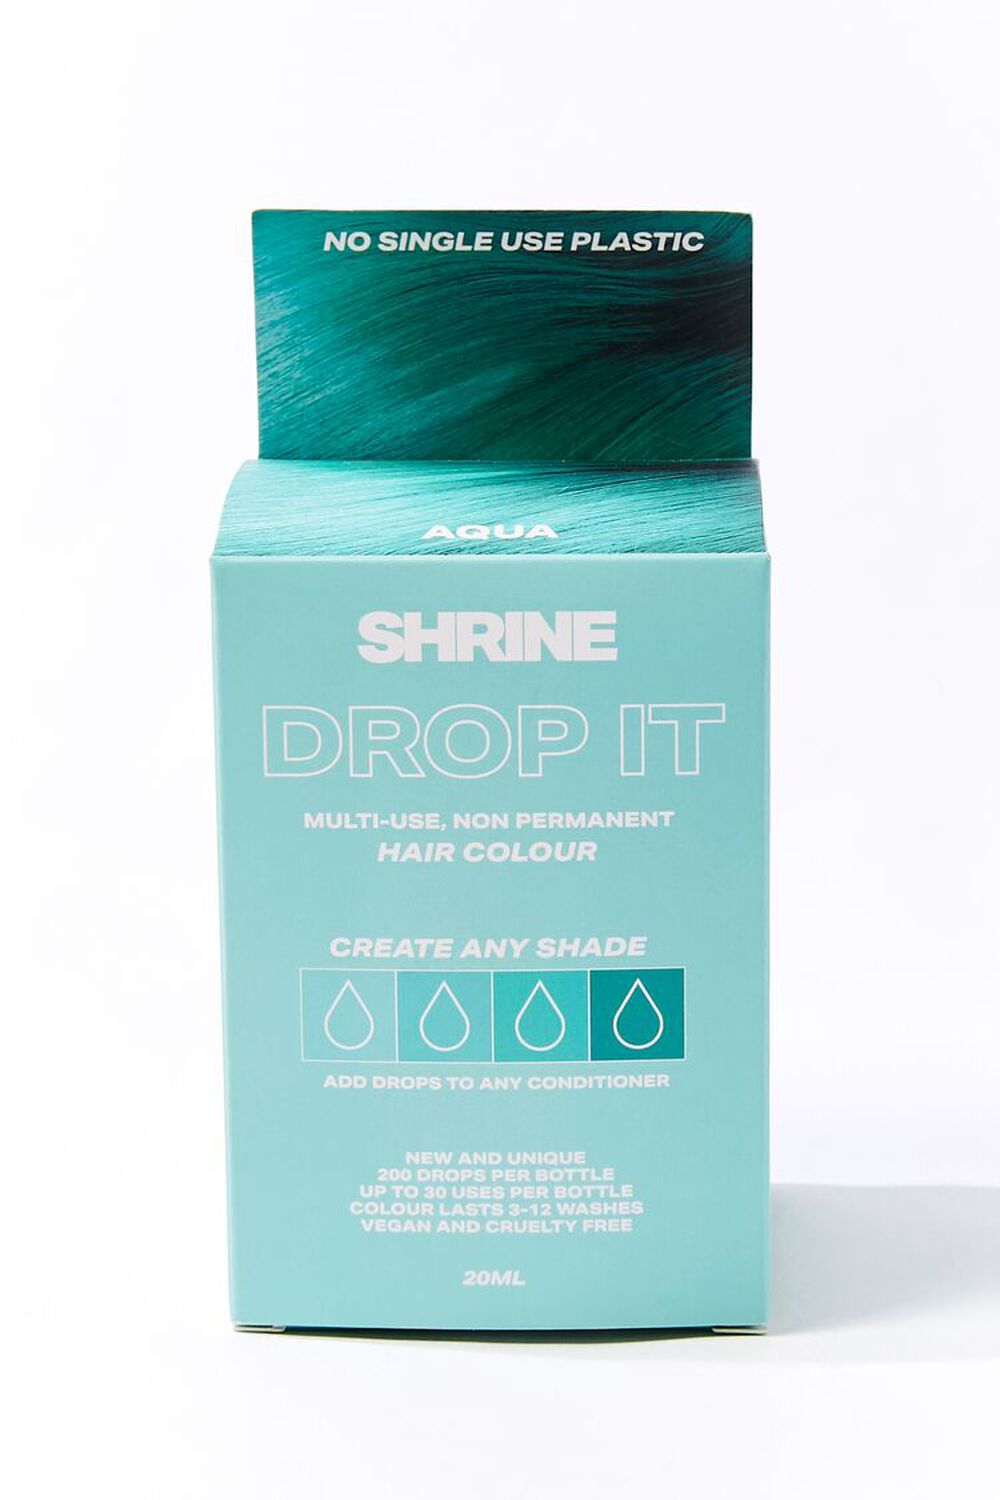 Aqua Hair Dye - Drop It Kit, image 2